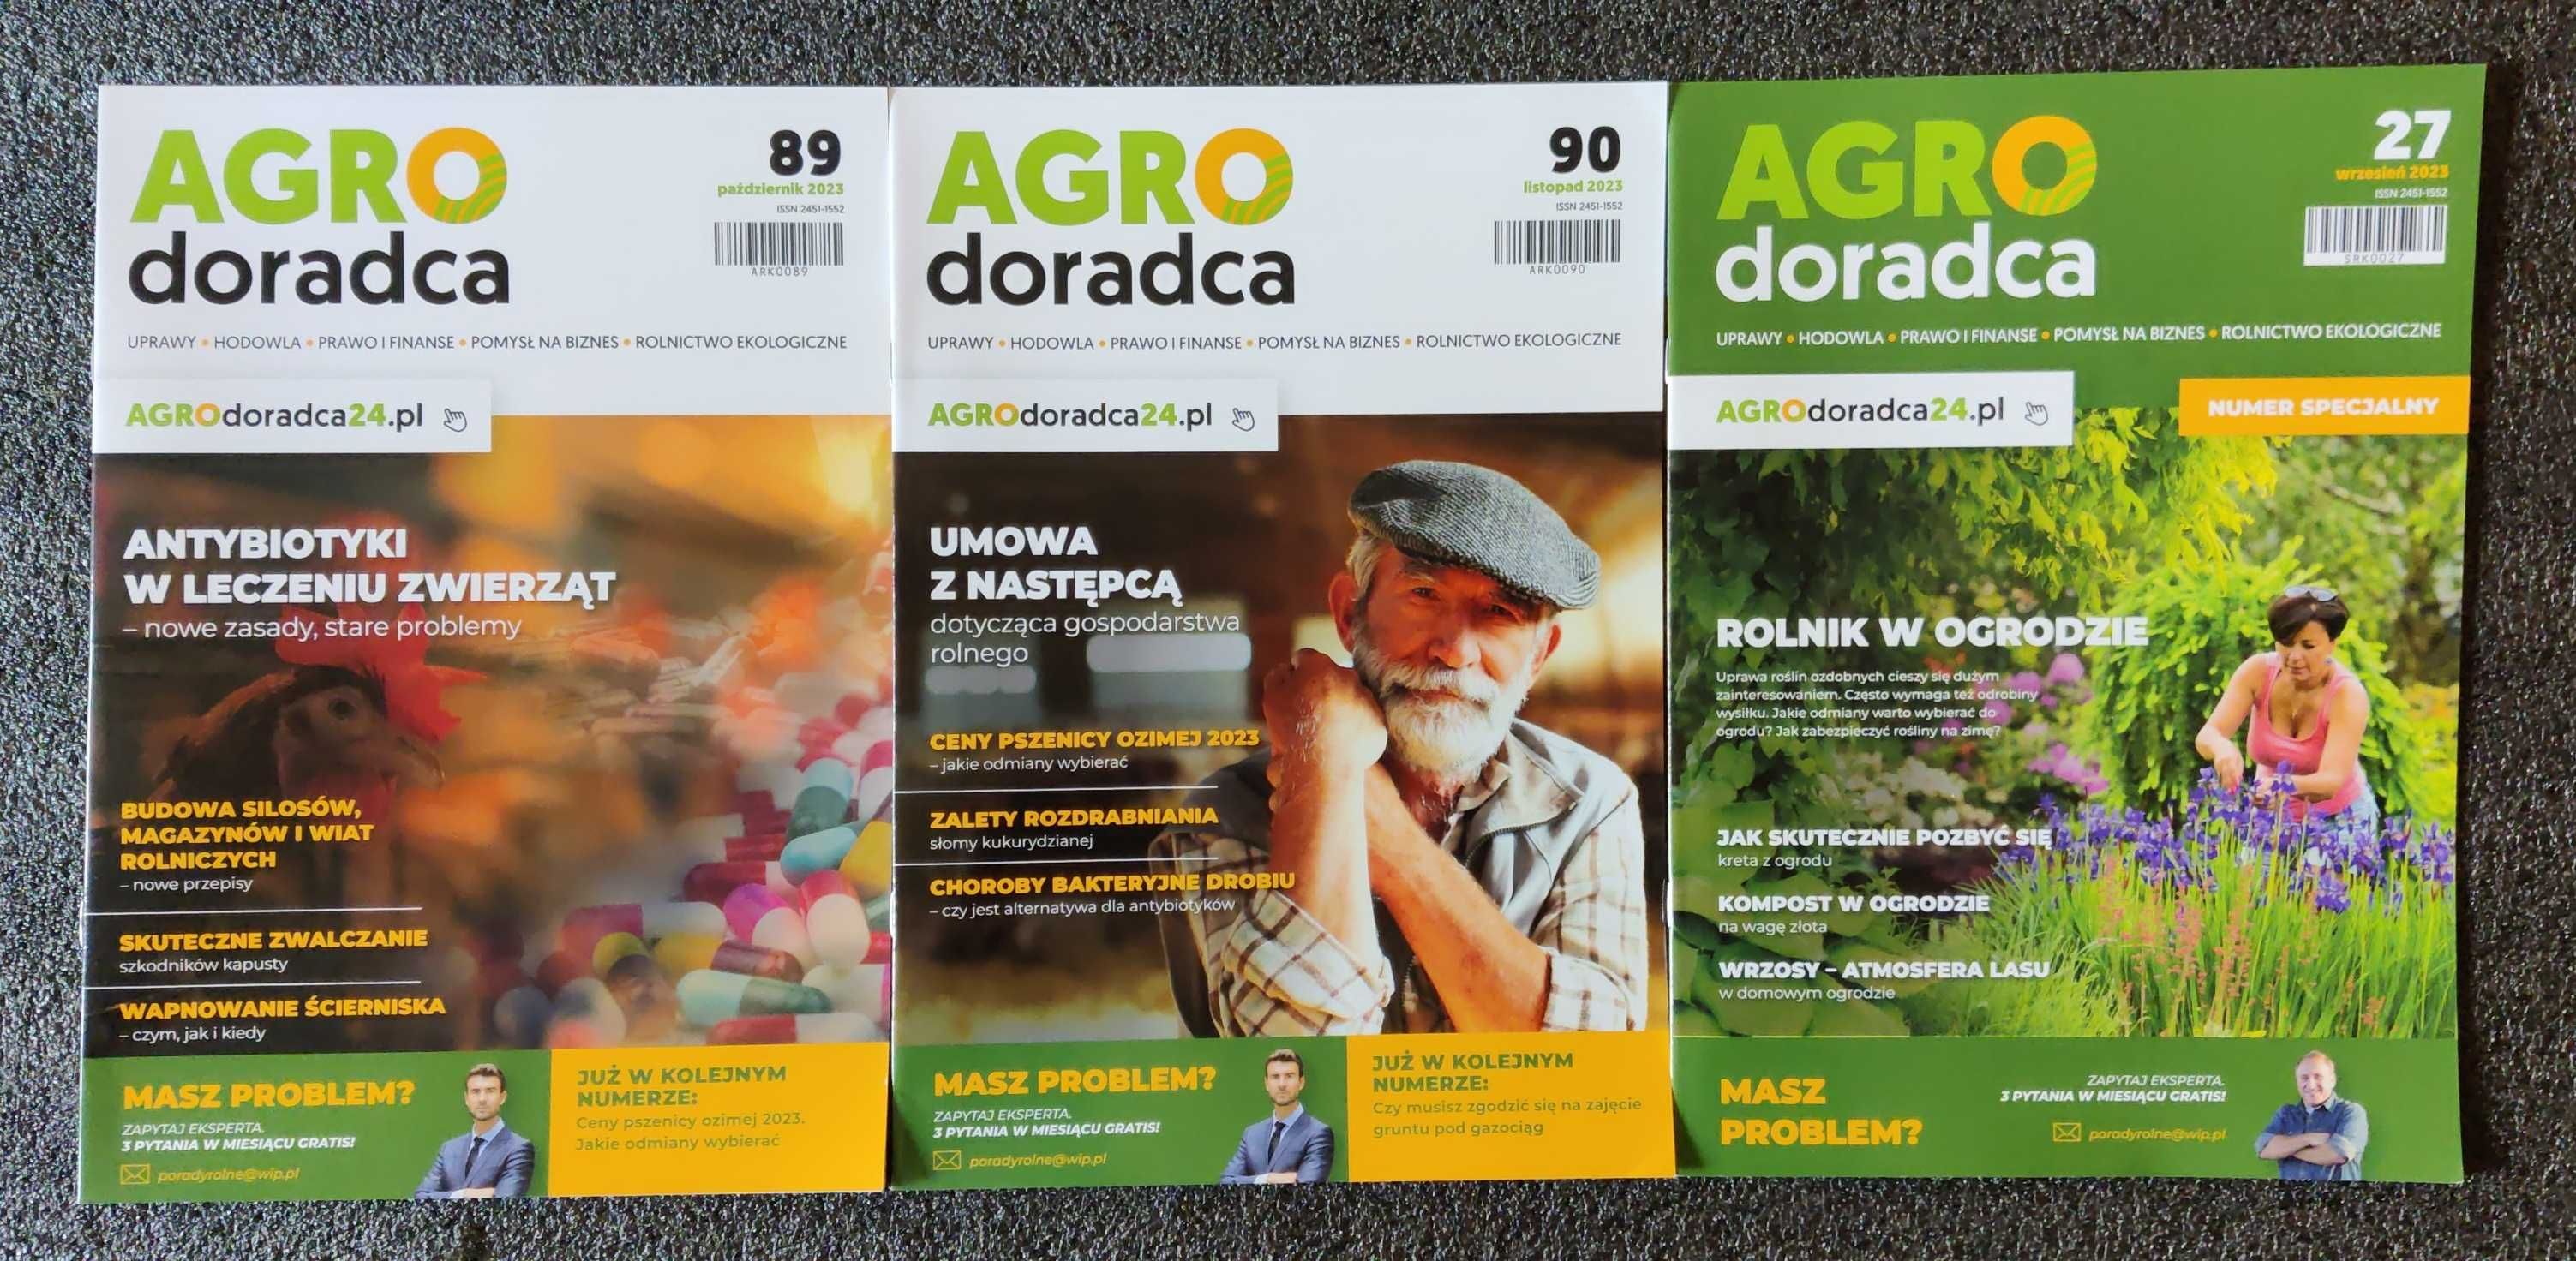 Agrodoradca Agro Doradca, prawo pieniądze uprawy hodowla, rolnictwo